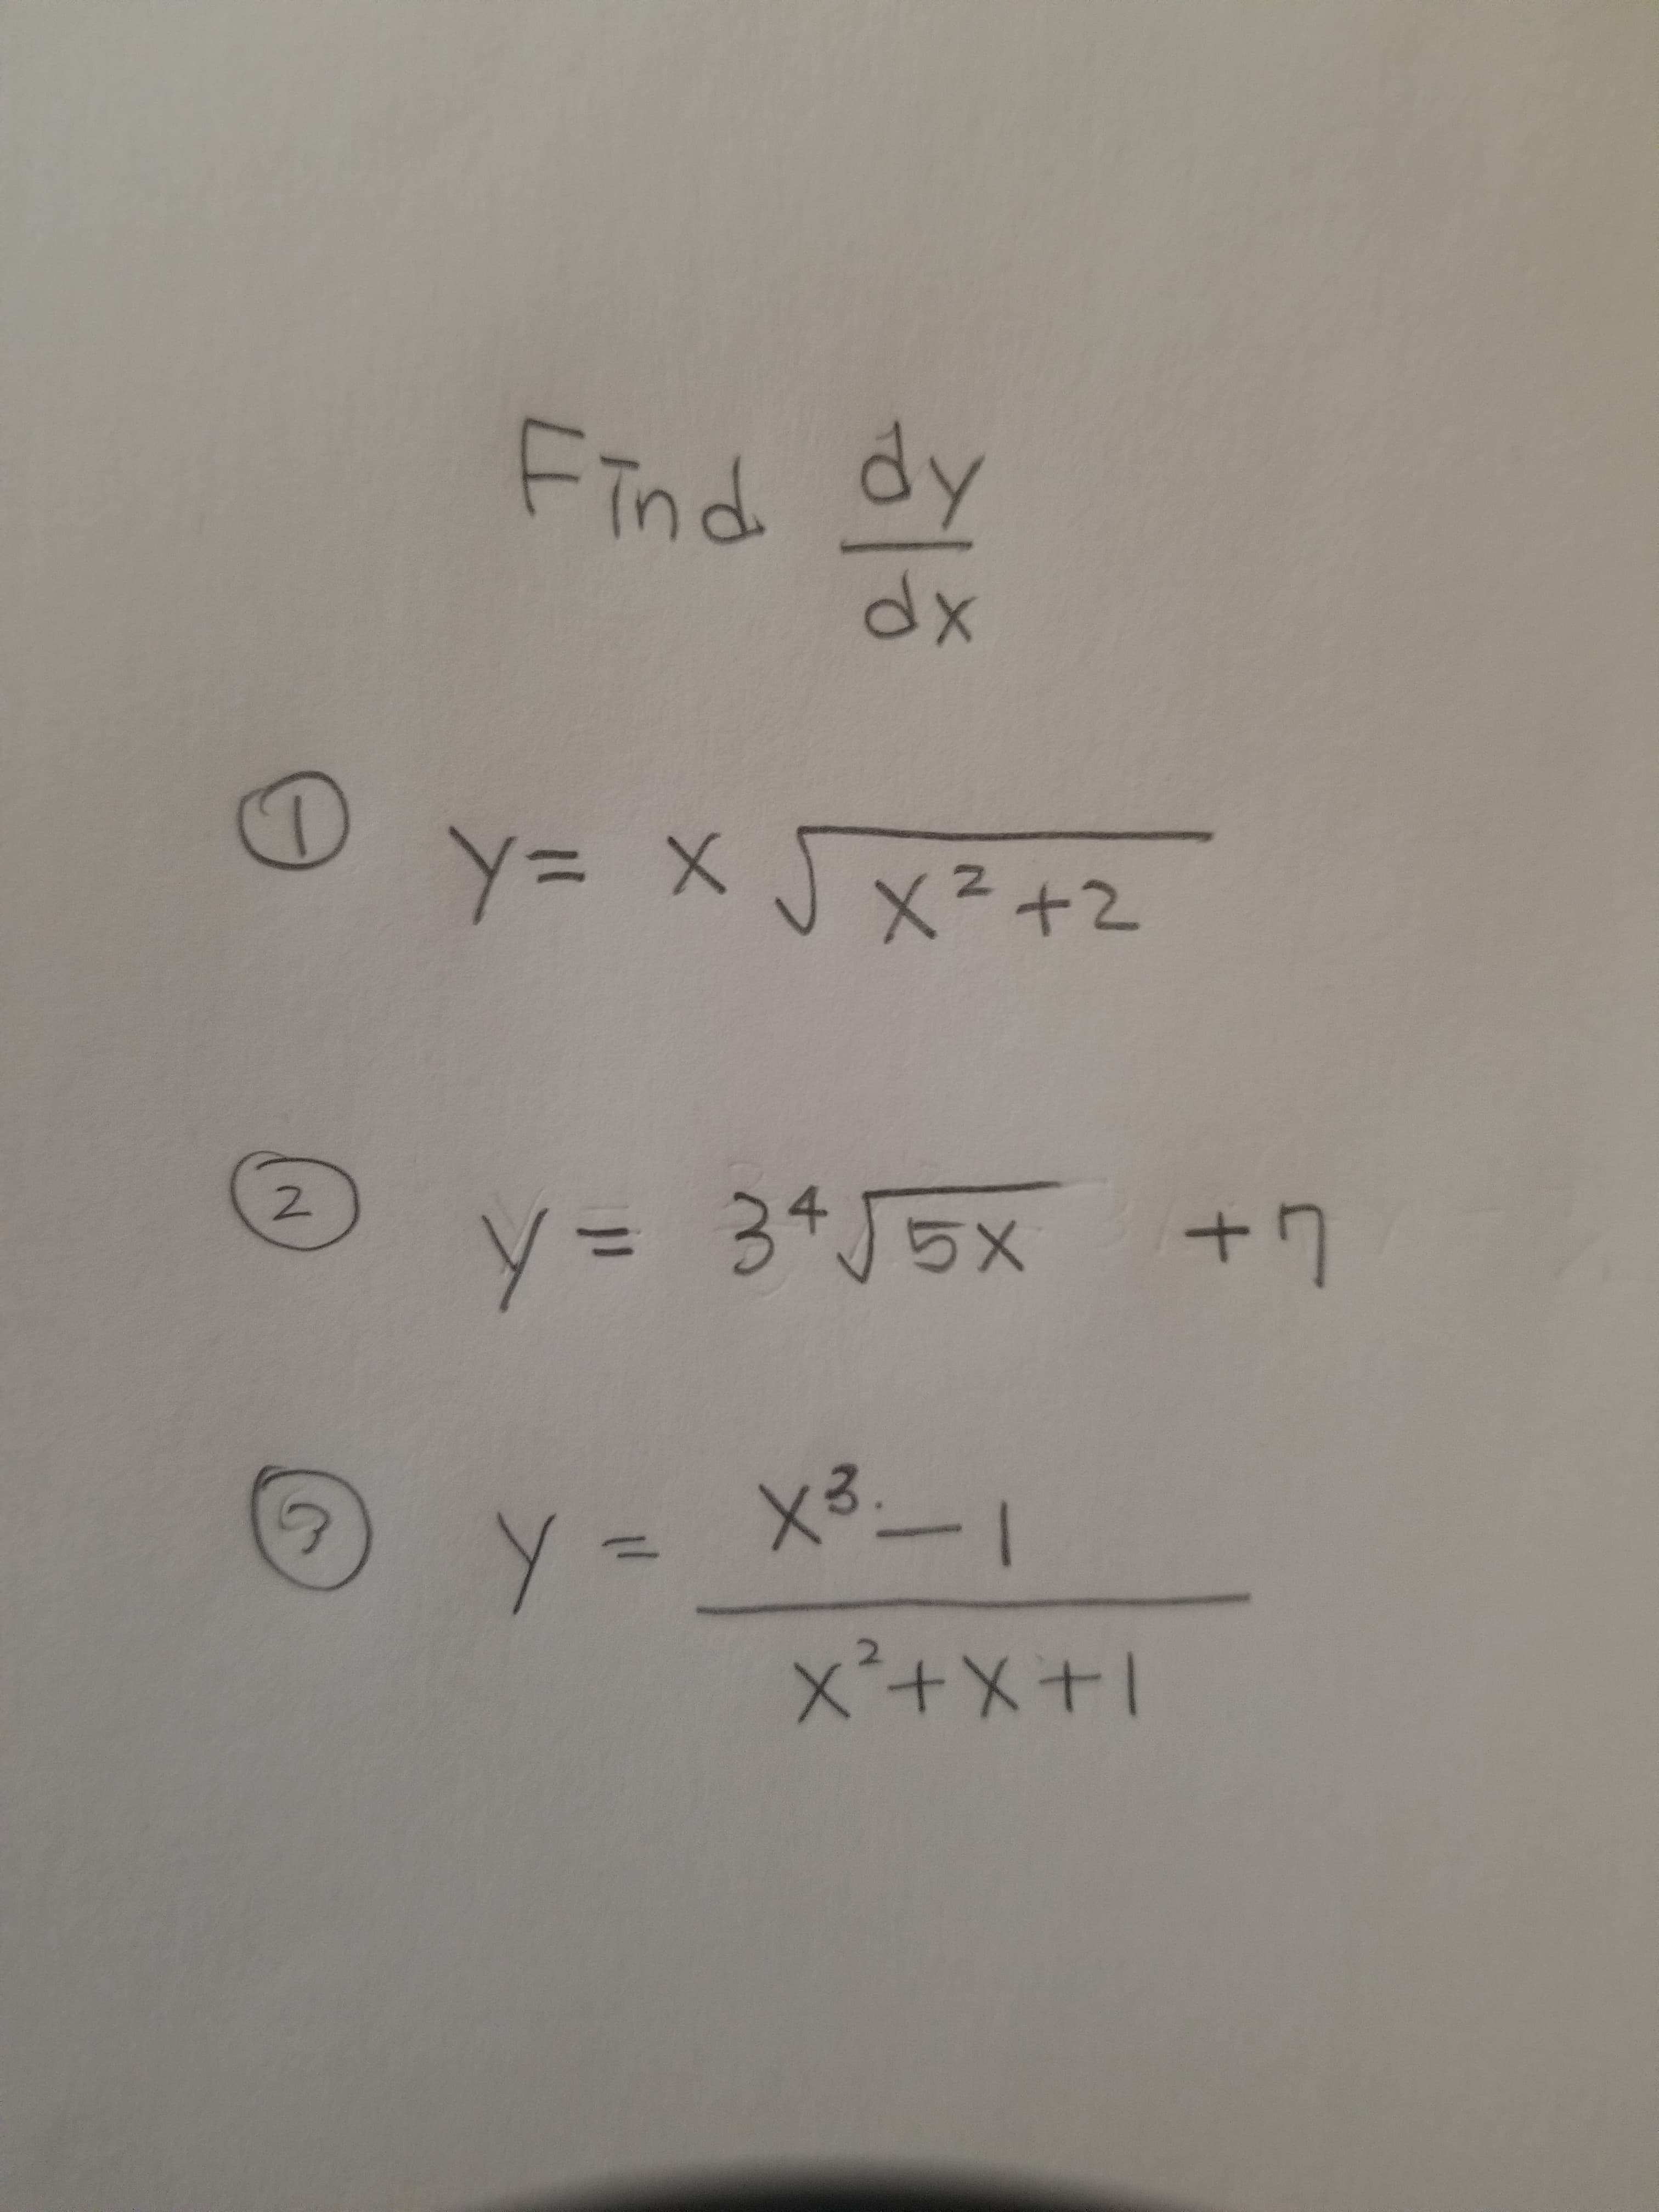 Find dy
dx
y= x
Y3 X J x²+2
